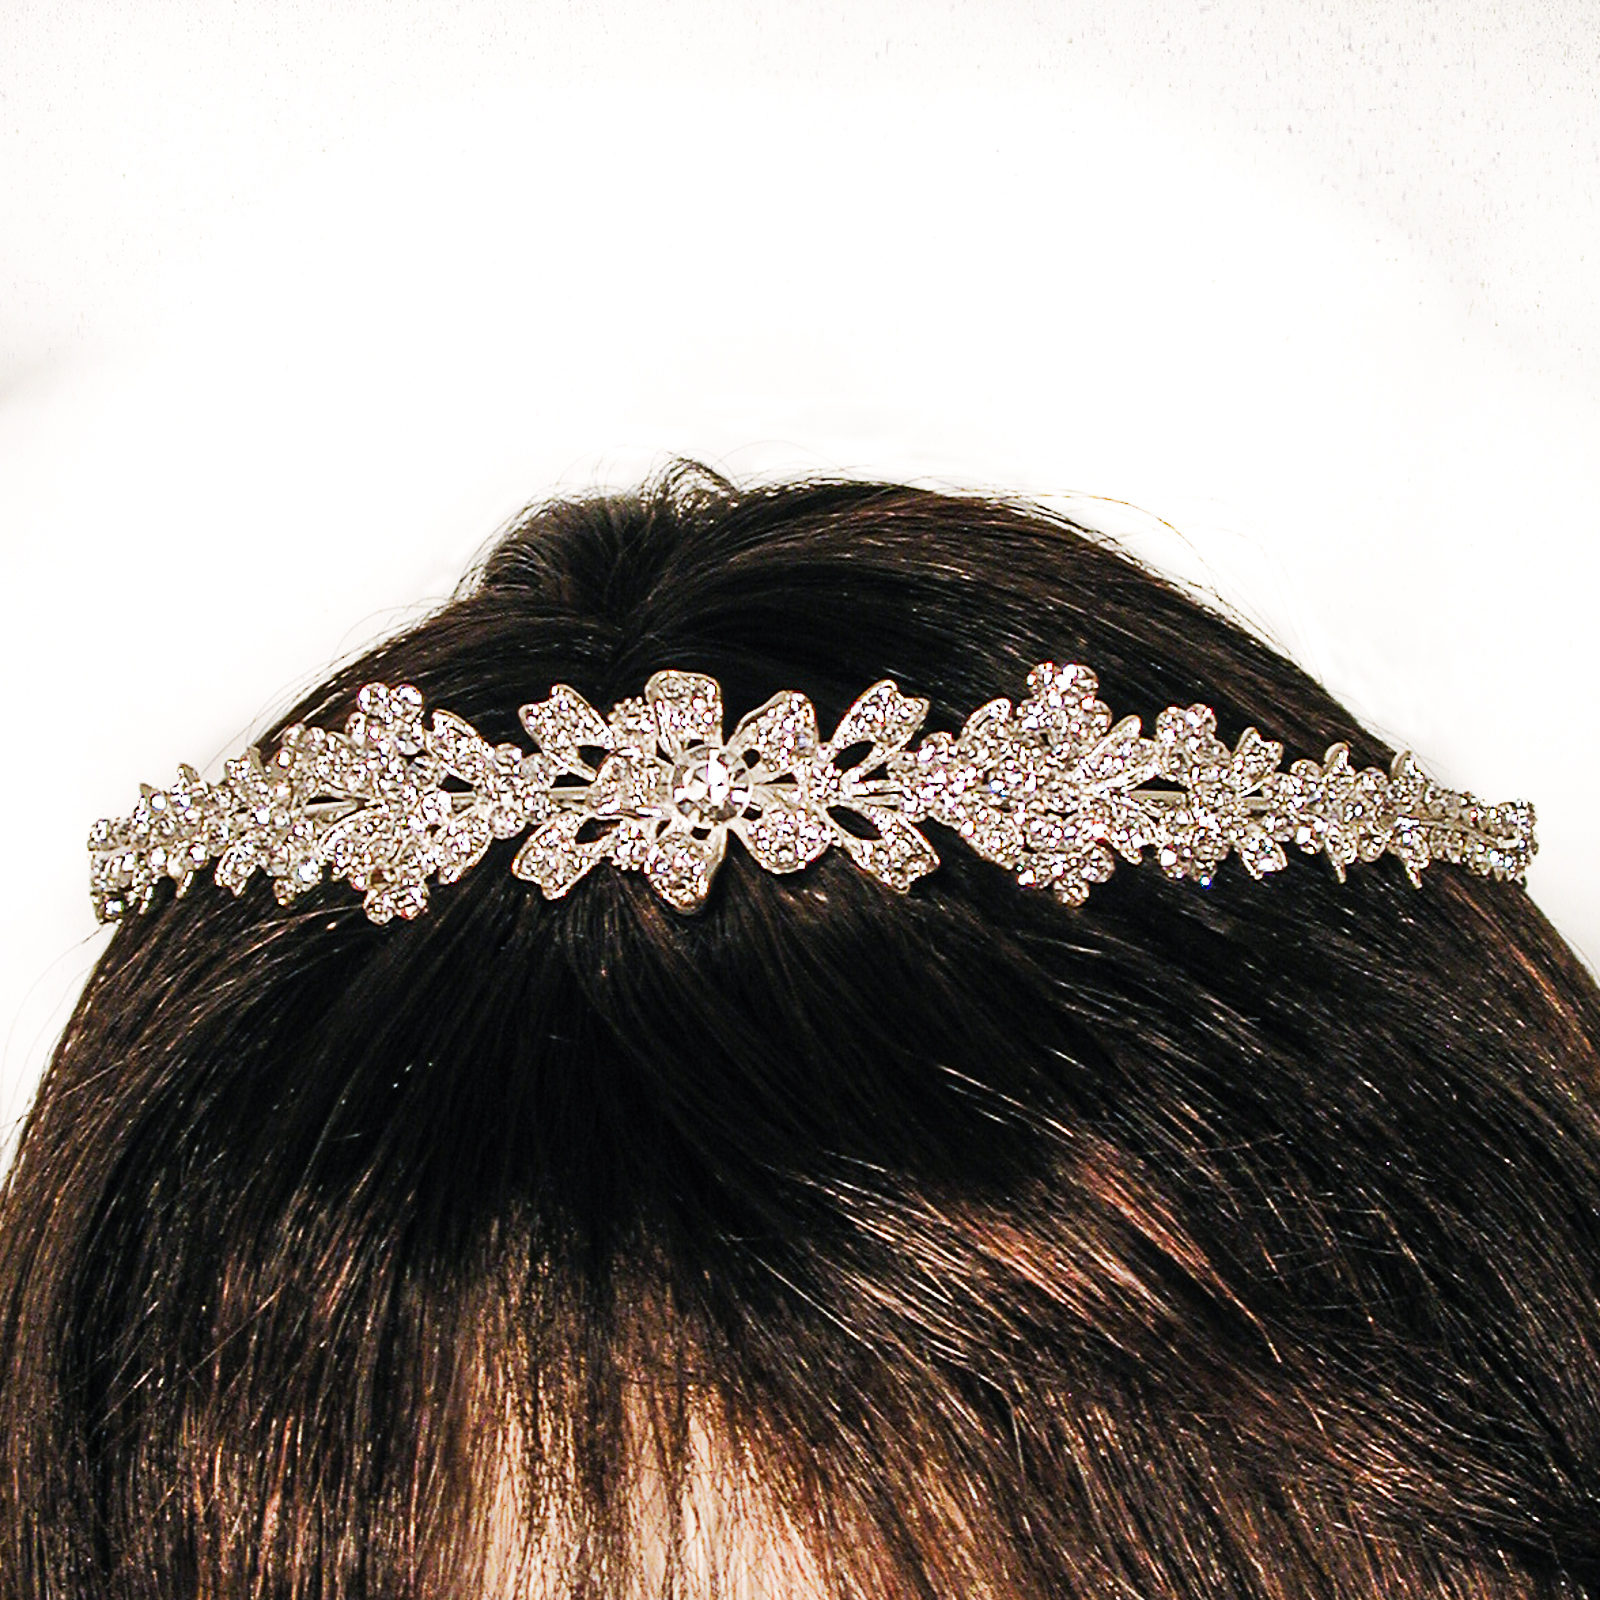 Sparkling Crystal Rhinestone Crown or Headband, a fashion accessorie - Evening Elegance